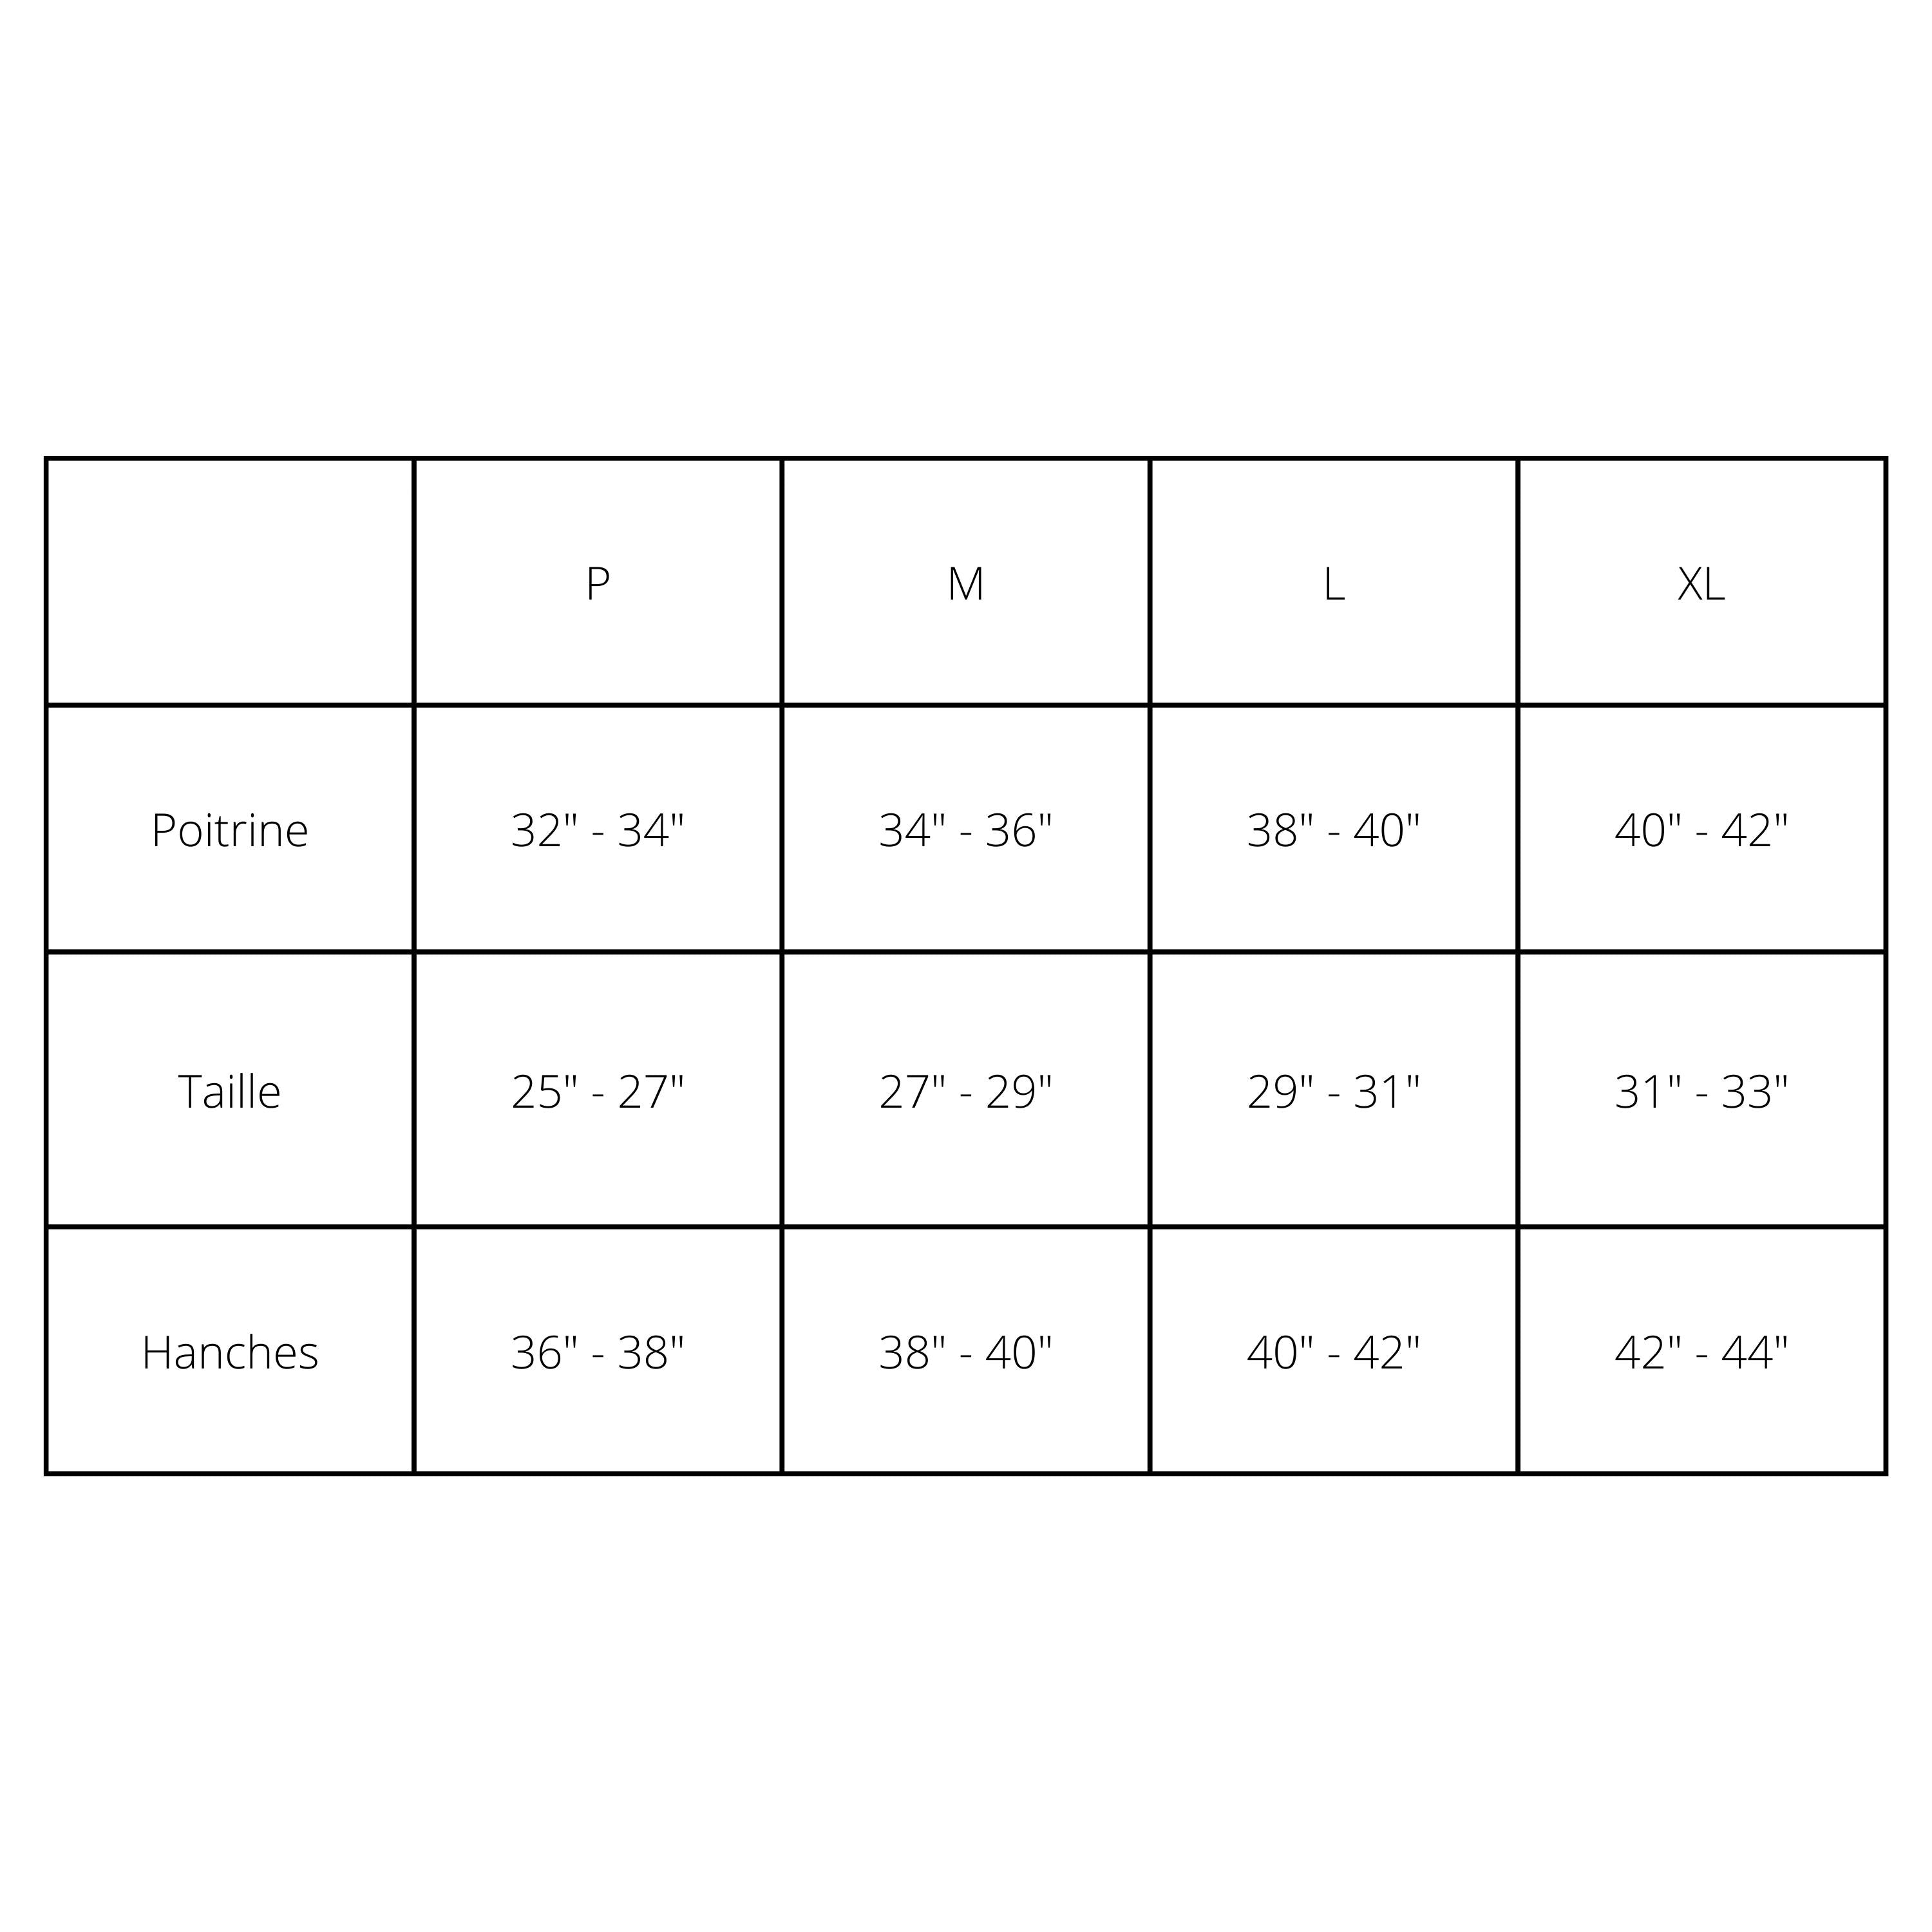 Tableau de la fiche technique avec les mensurations pour S, M, L, XL.